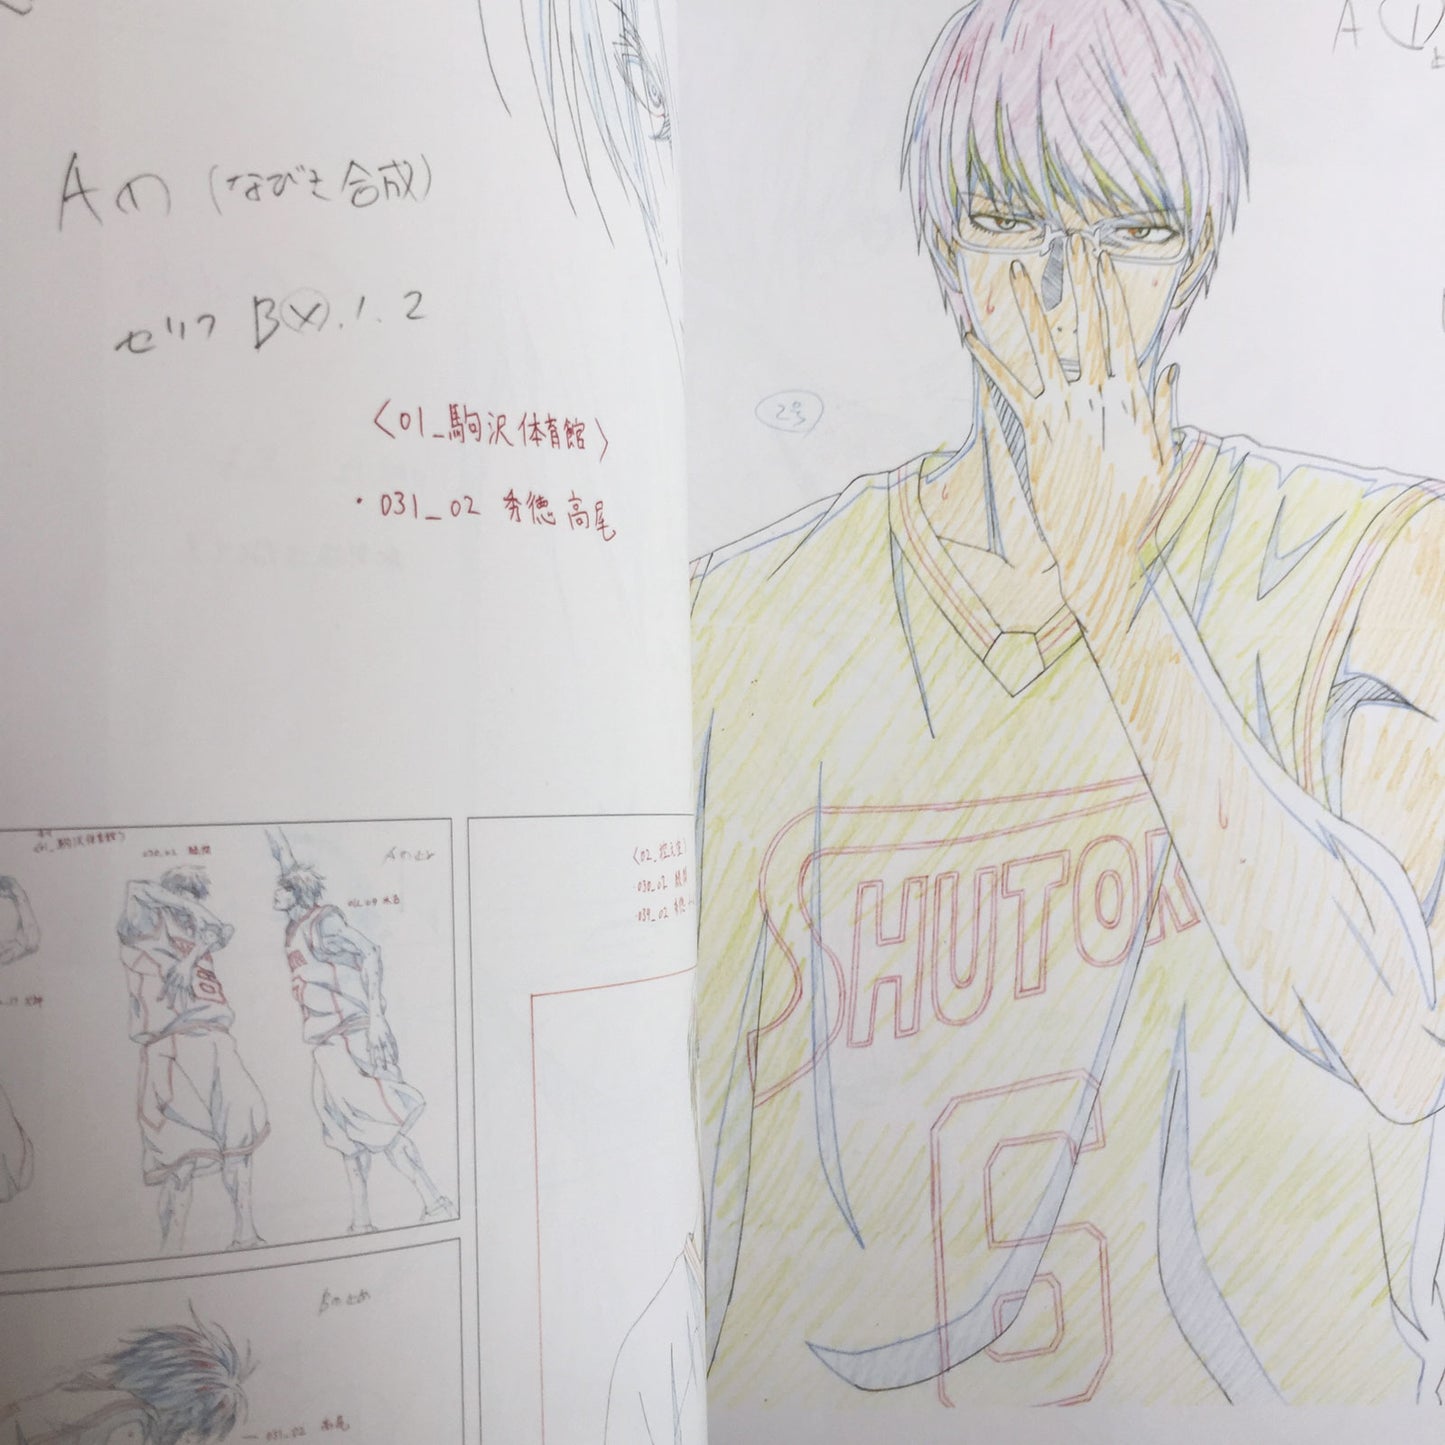 Kuroko's Basketball Genga Collection TV Animation Illustration Works